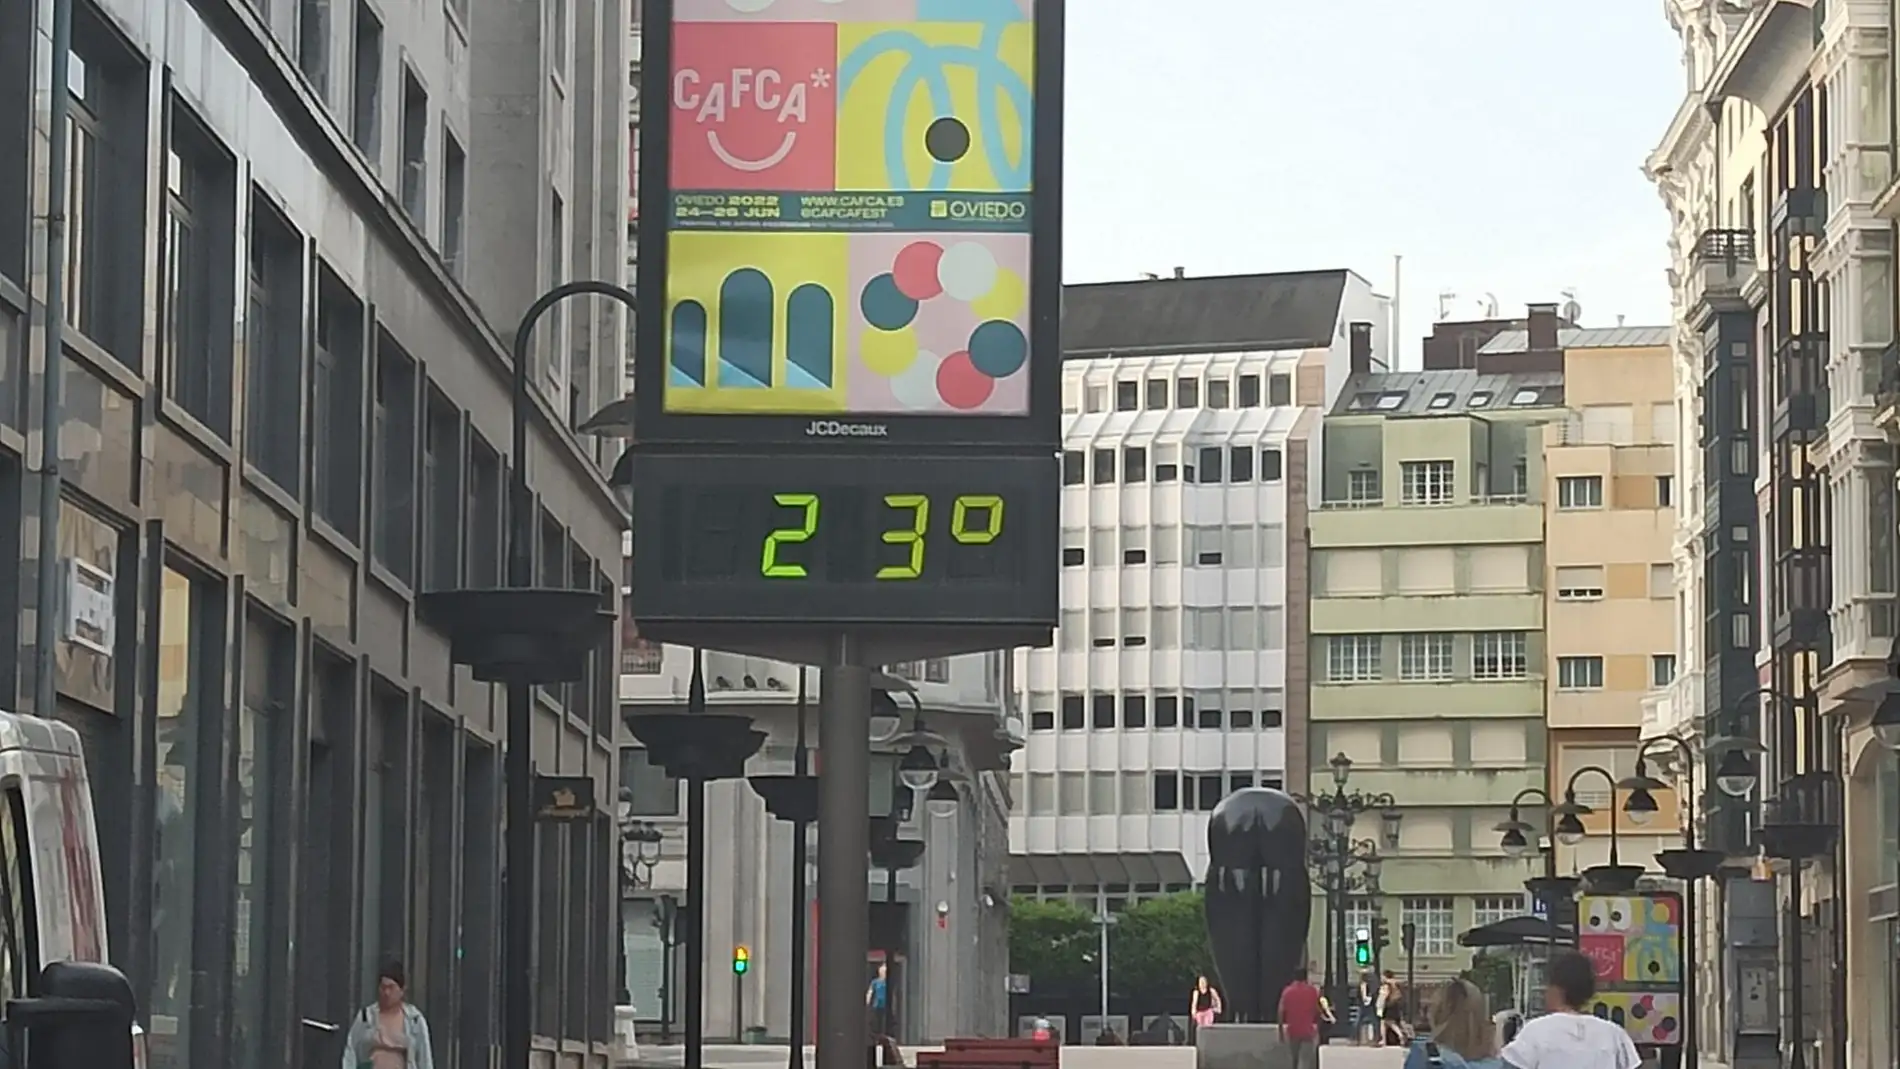 Oviedo registraba 23 grados a las 8 horas